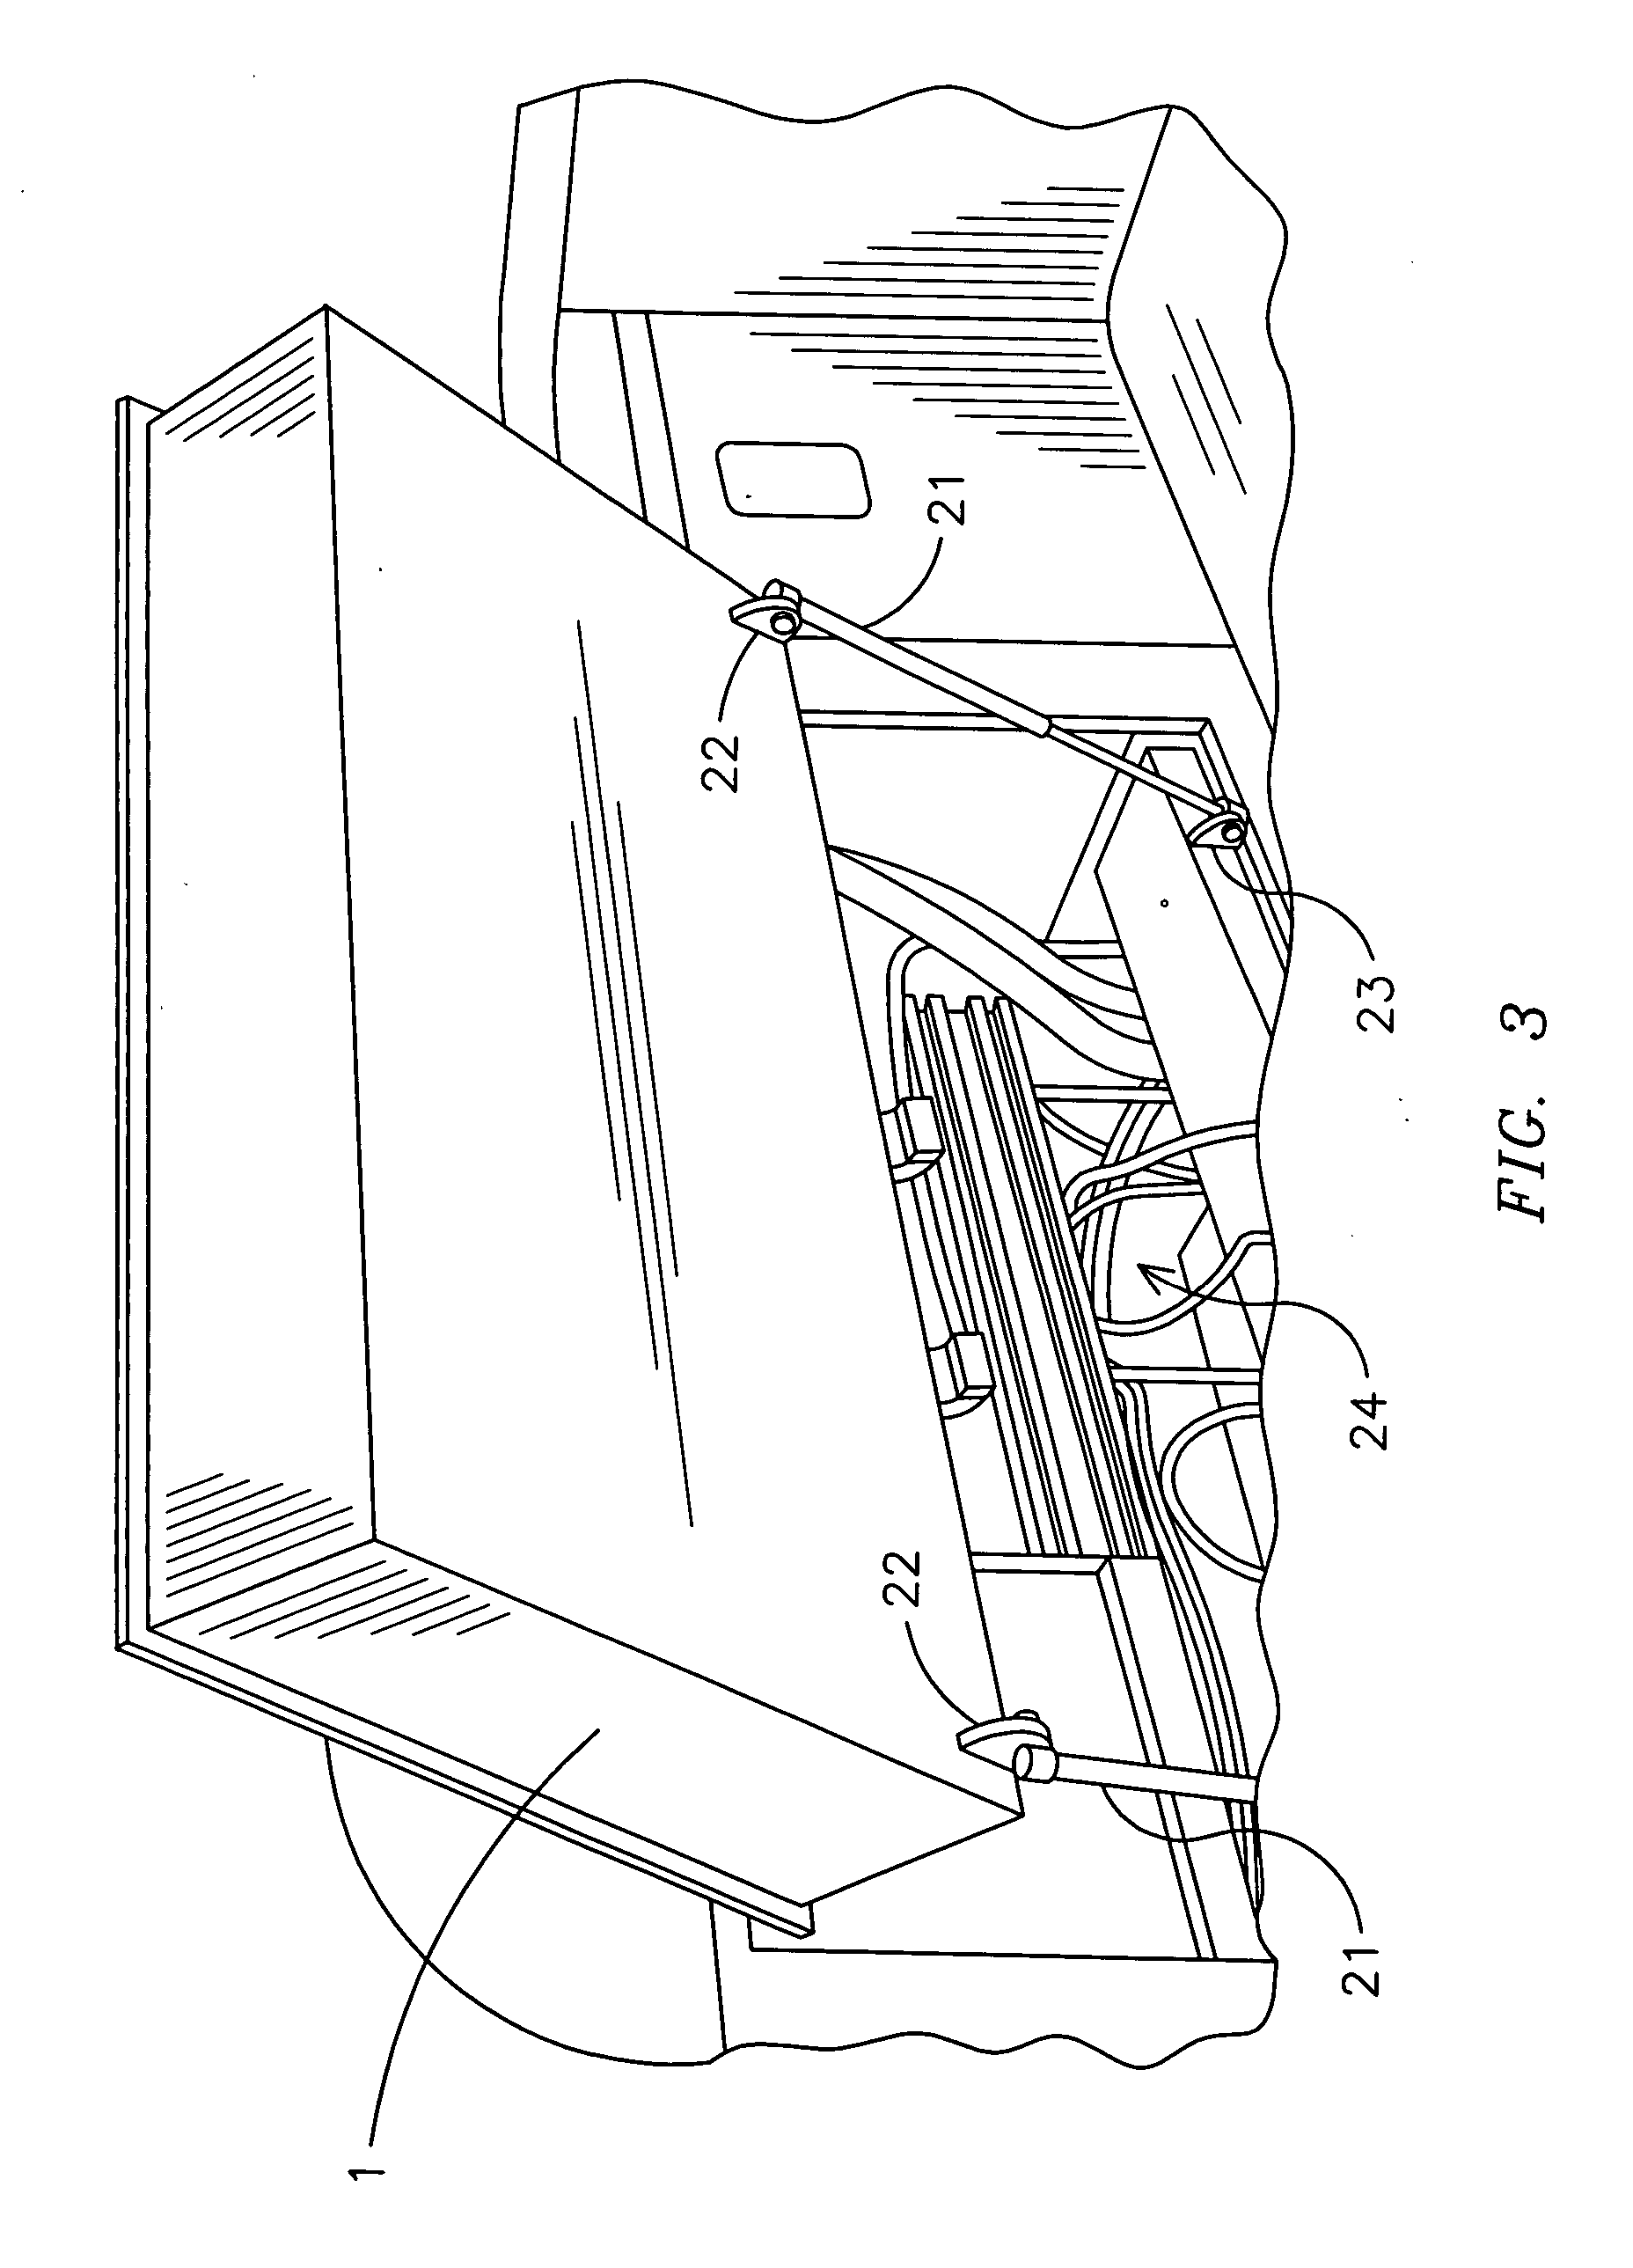 Folding seat assembly